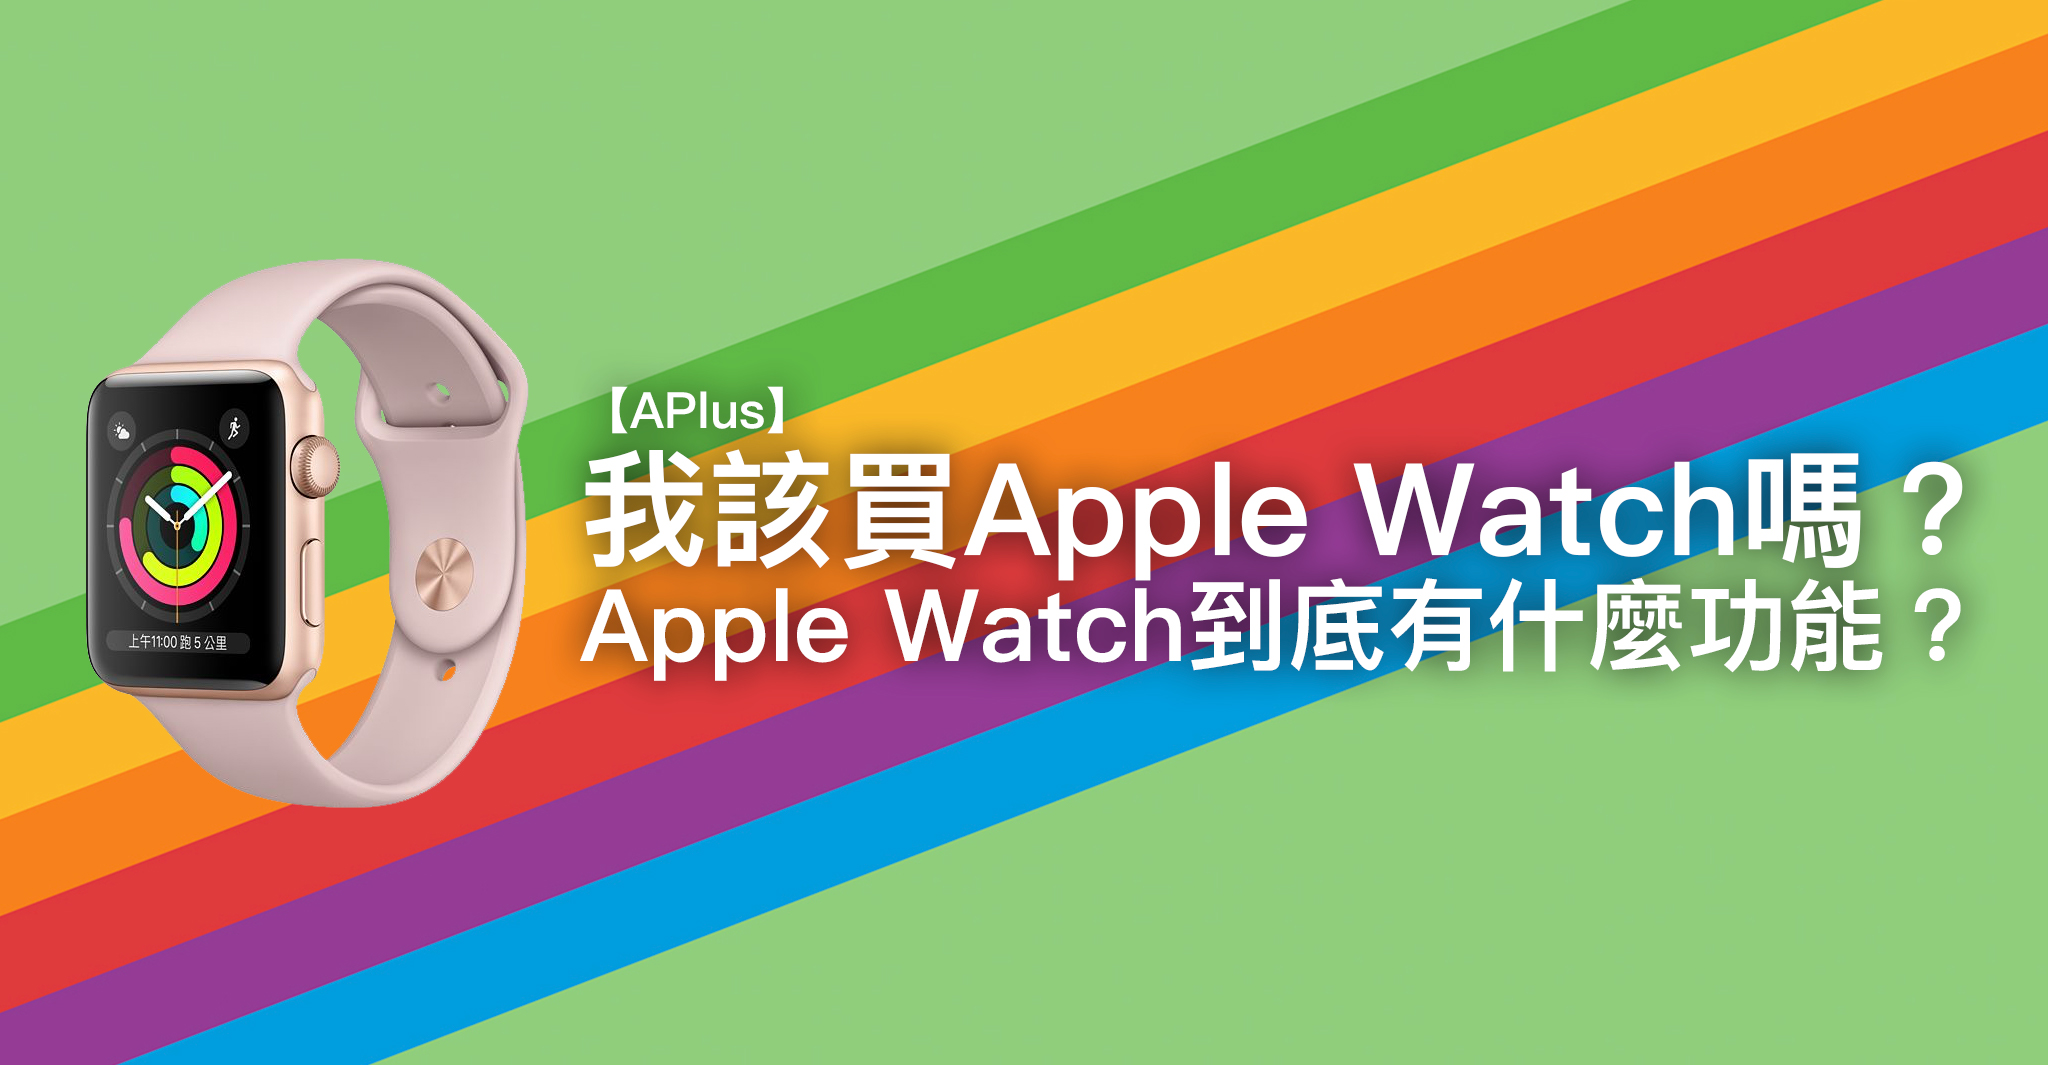 【APlus】 我該買Apple Watch嗎？ Apple Watch到底有什麼功能？